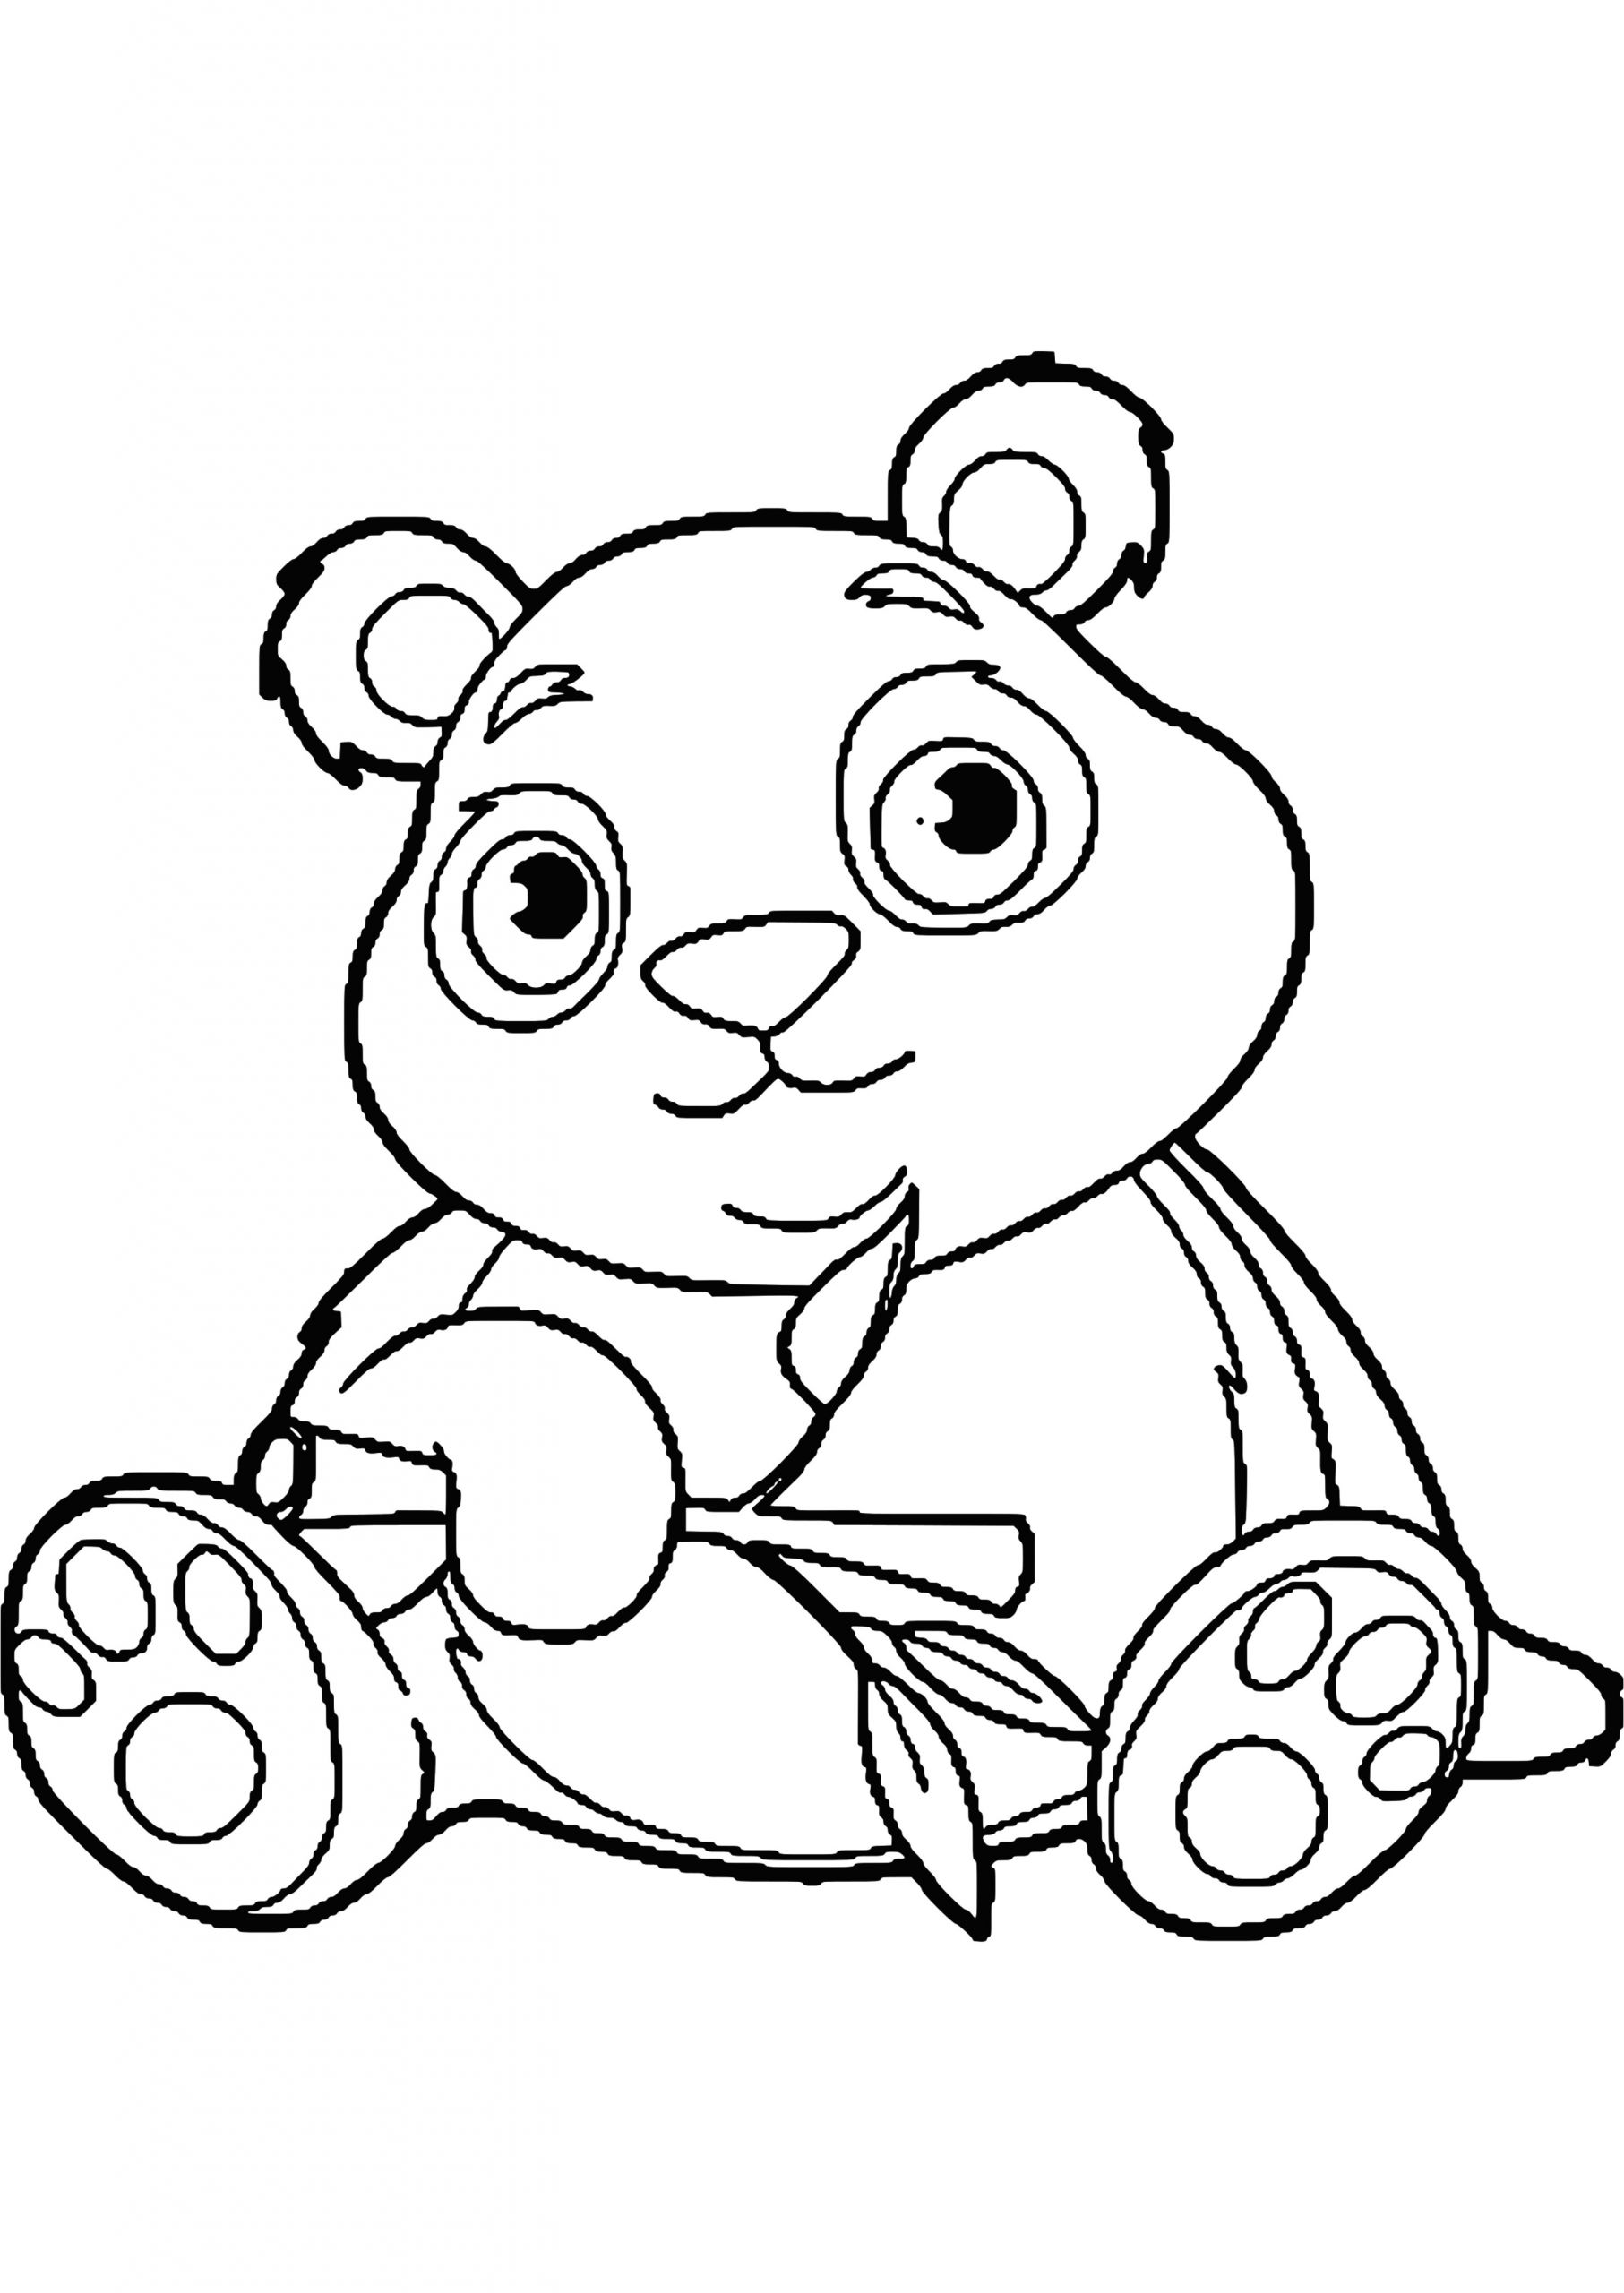 coloriage panda a imprimer gratuit s dessin colorier pandal meublerc 3